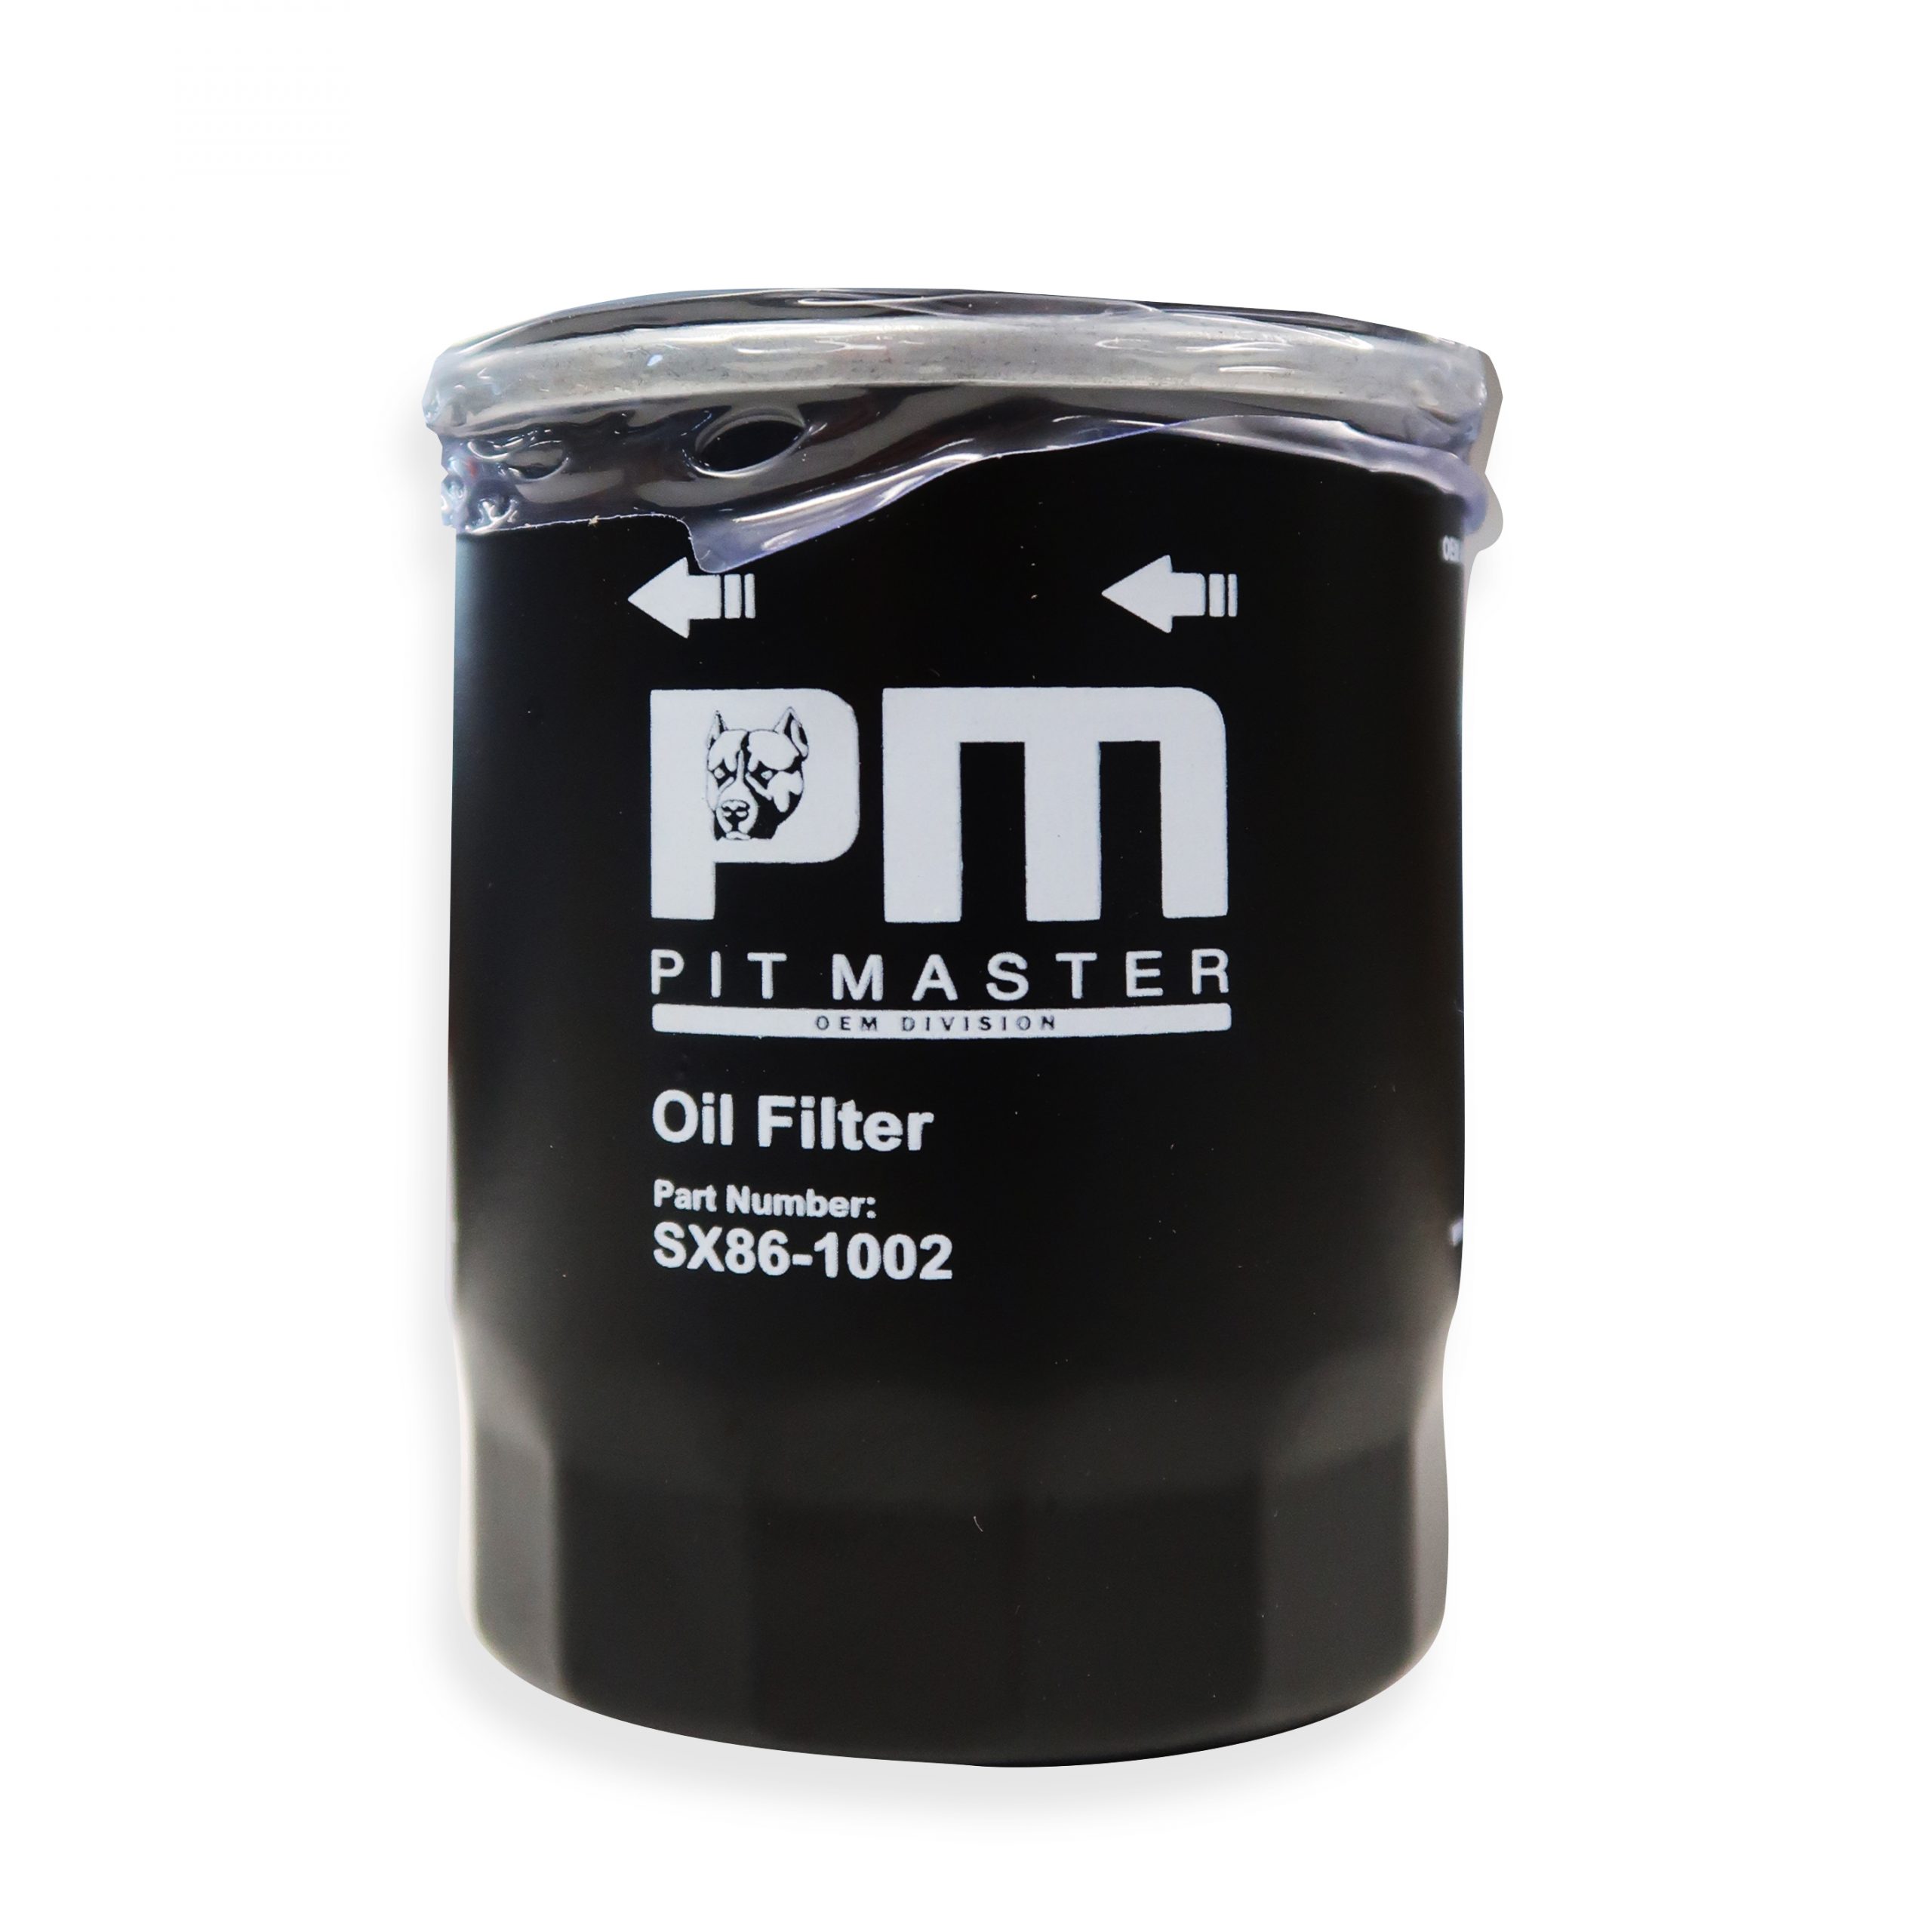 Pit Master Oil Filter